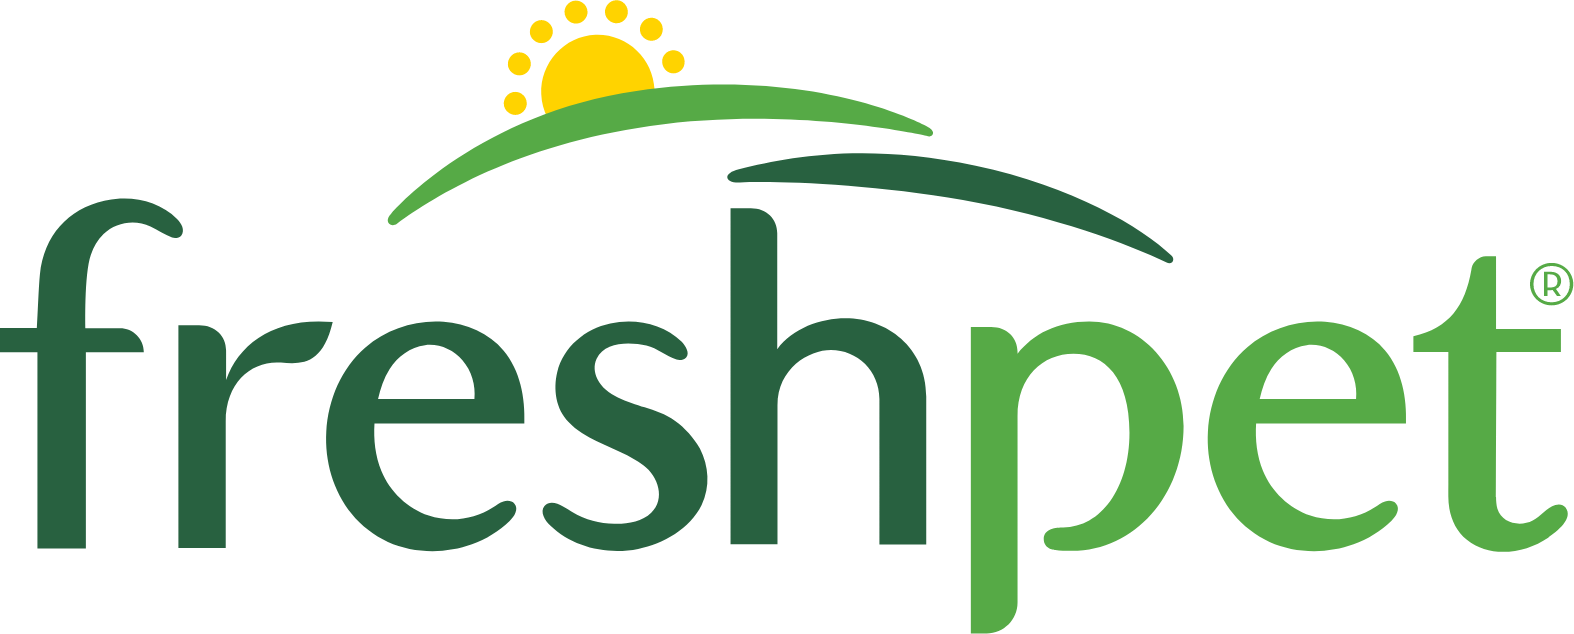 Freshpet logo large (transparent PNG)